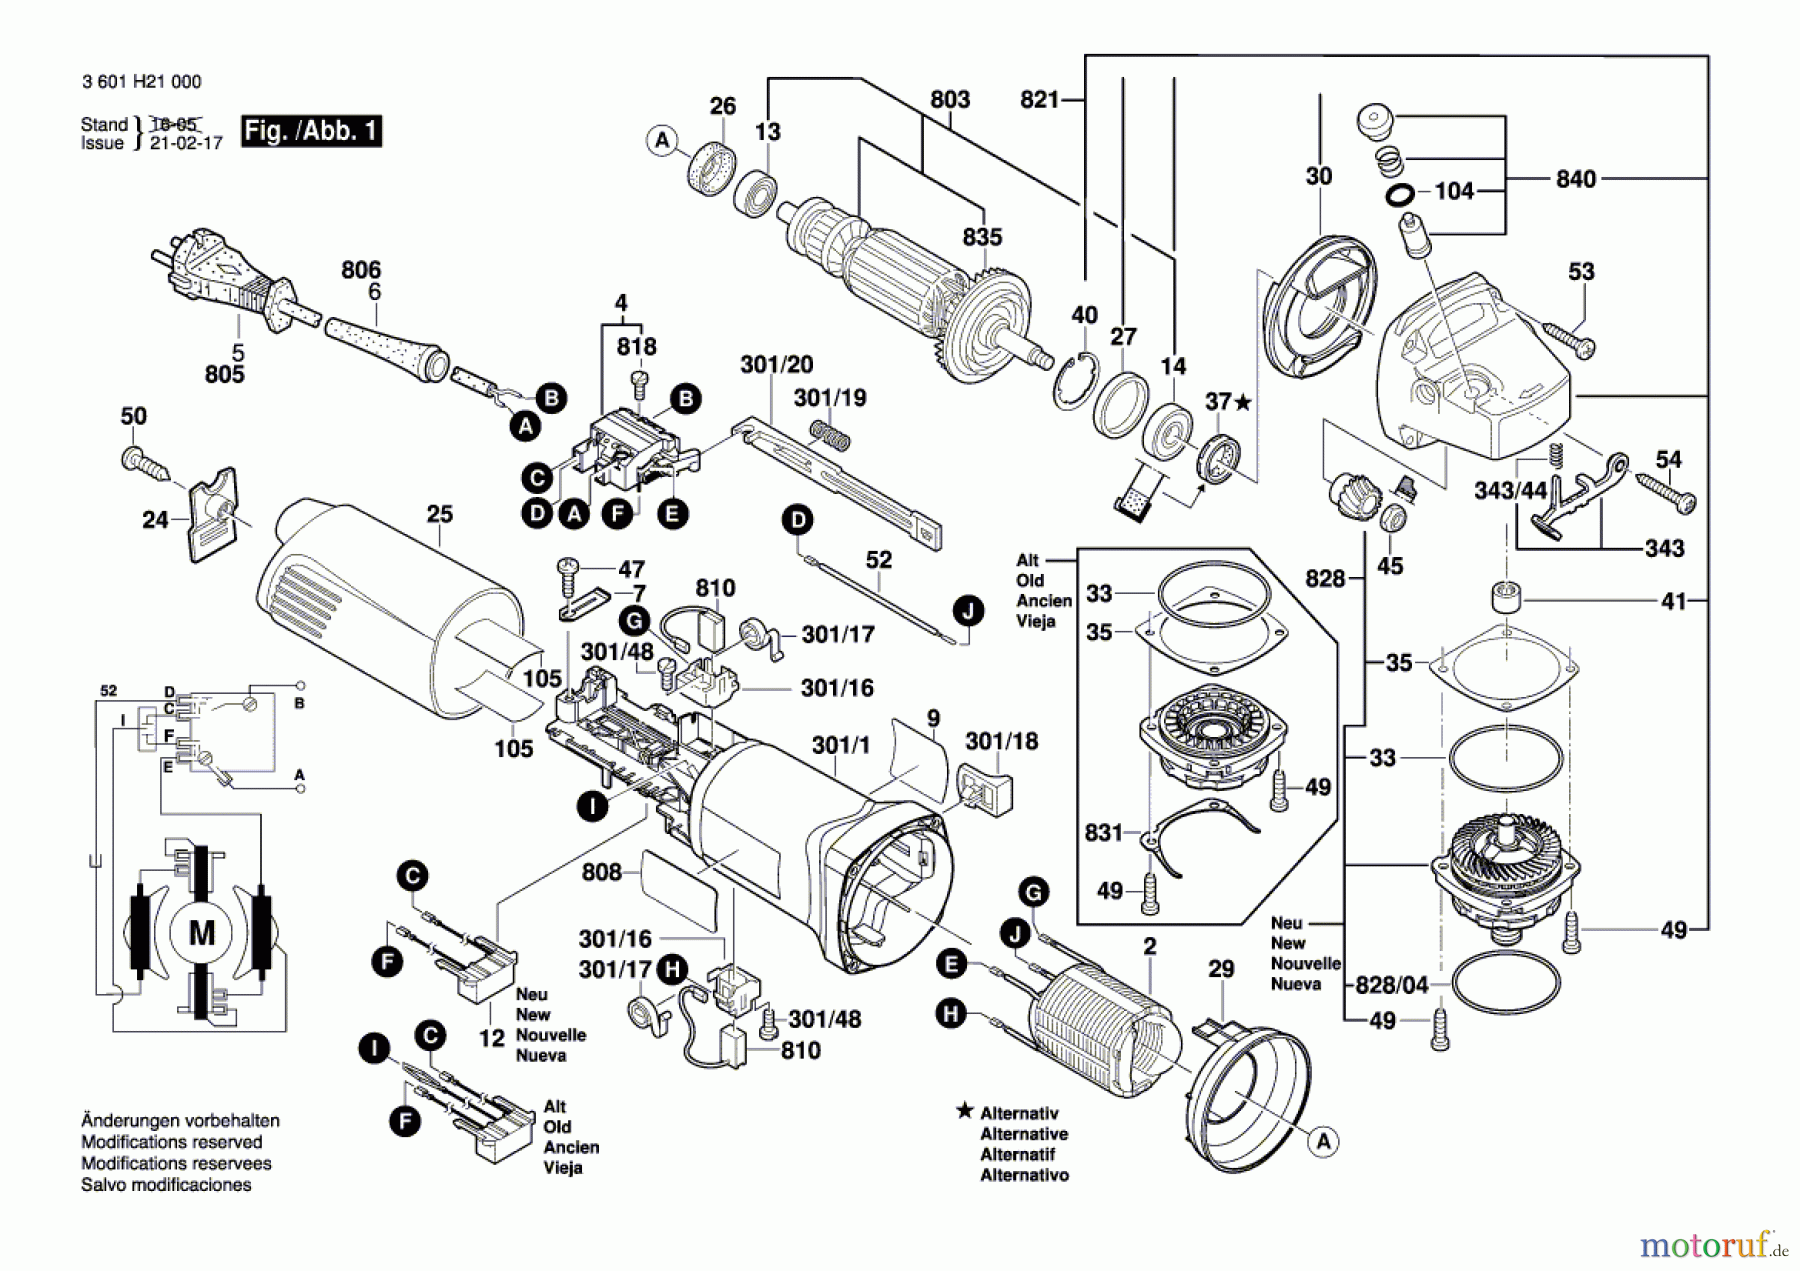  Bosch Werkzeug Winkelschleifer GWS 10-125 Seite 1